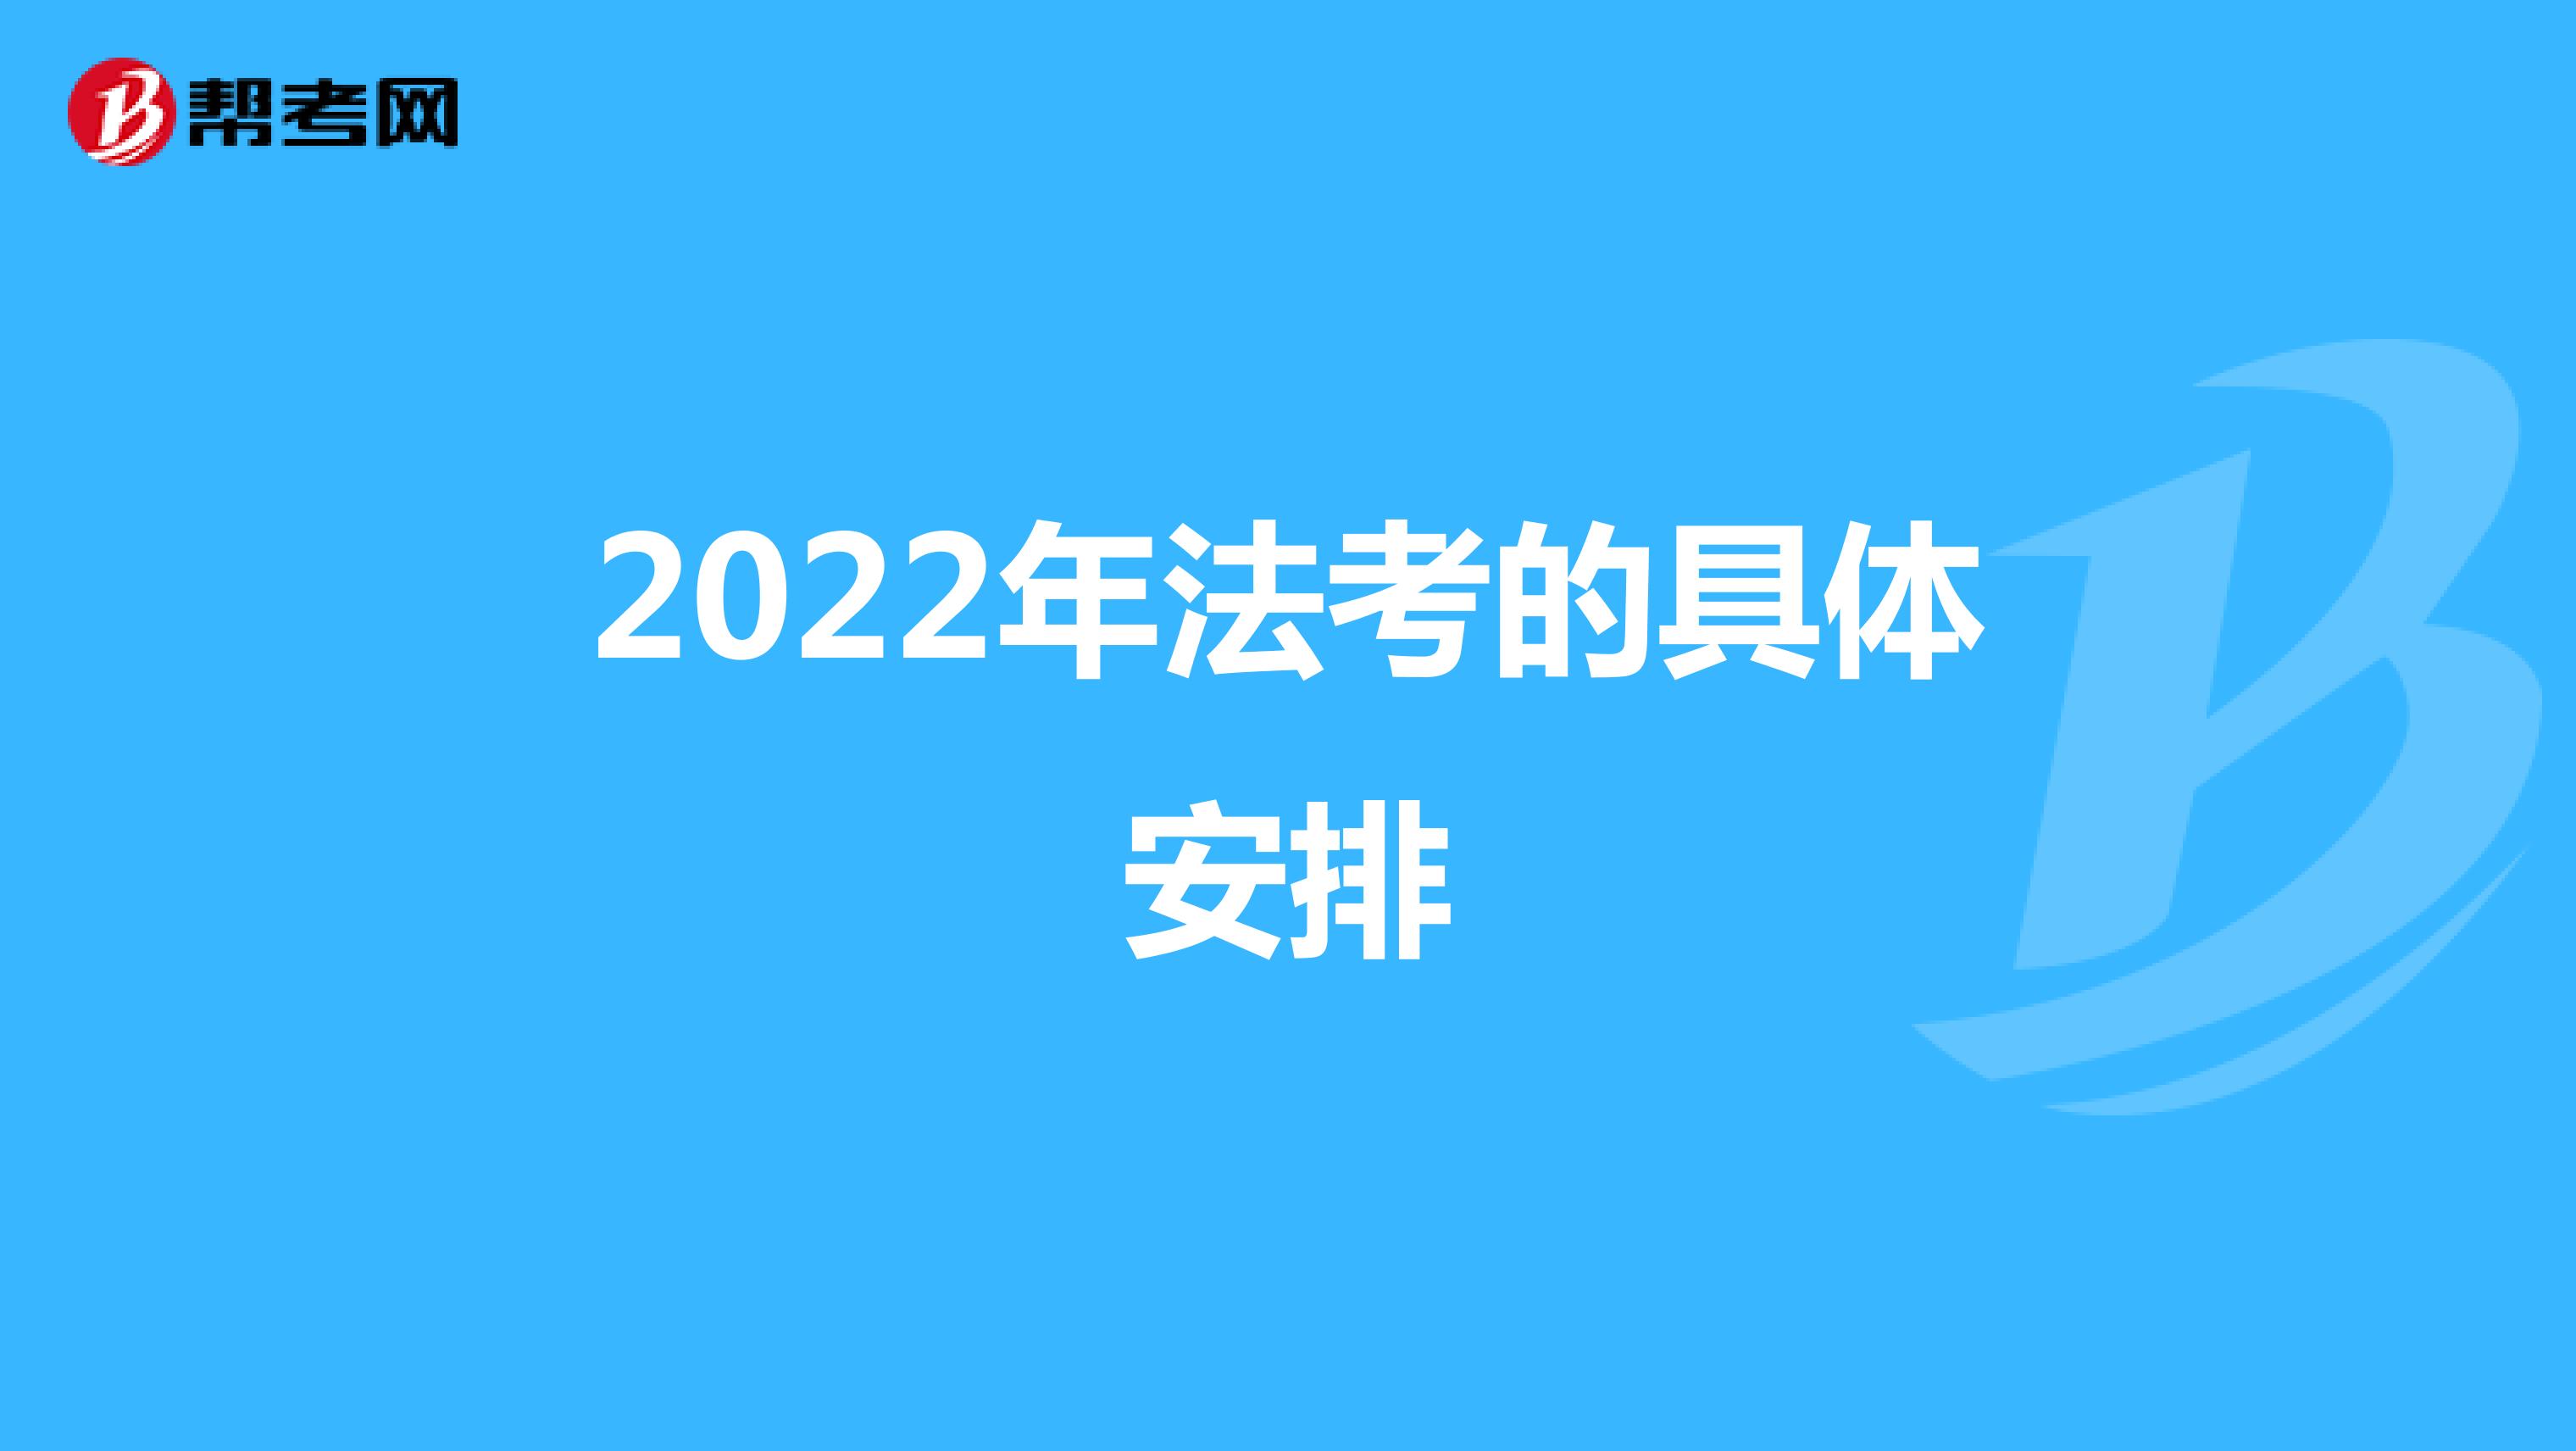 2022年法考的具體安排